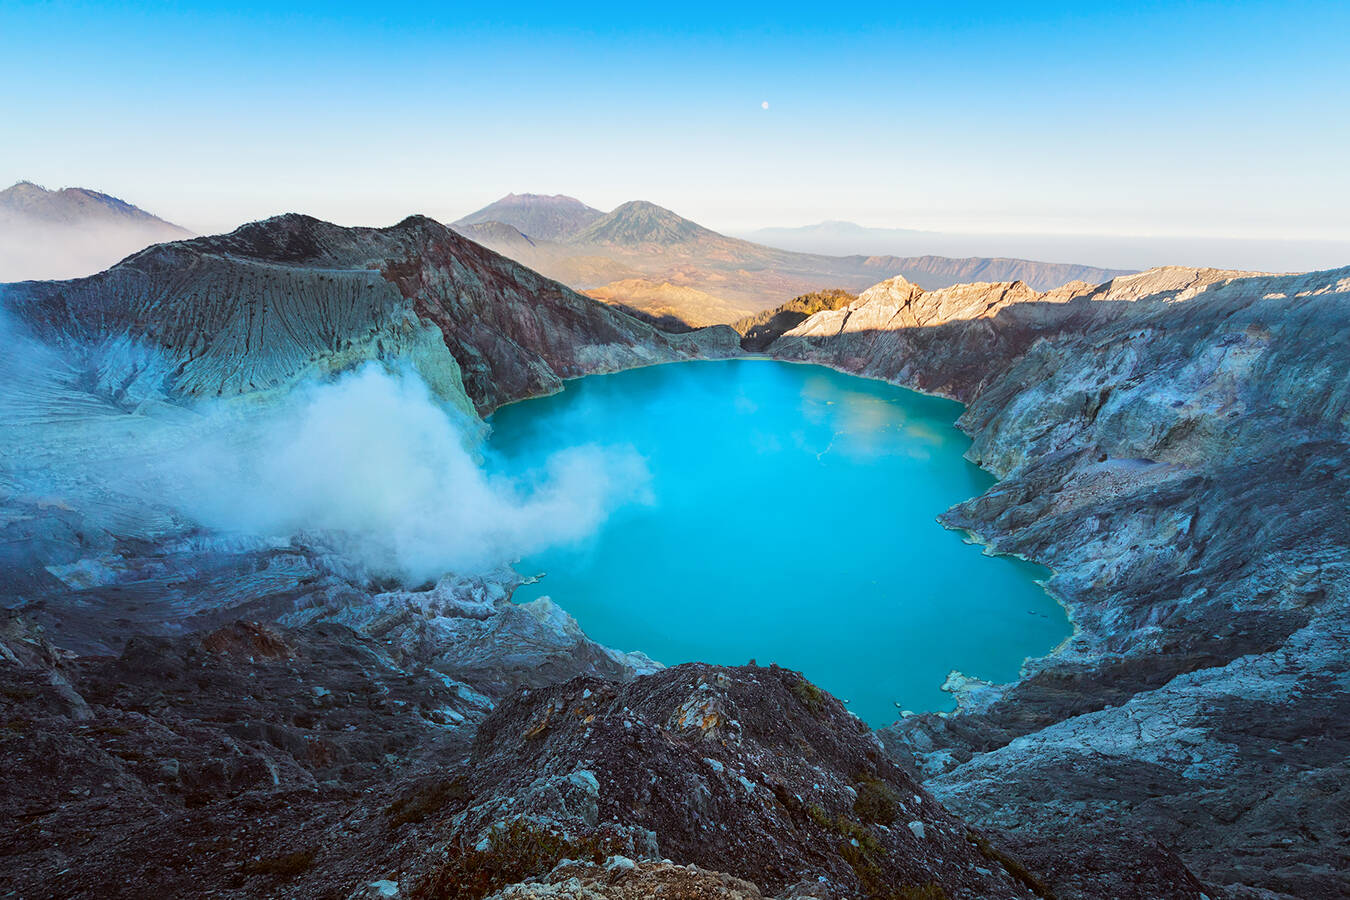 Ijen crater lake: 